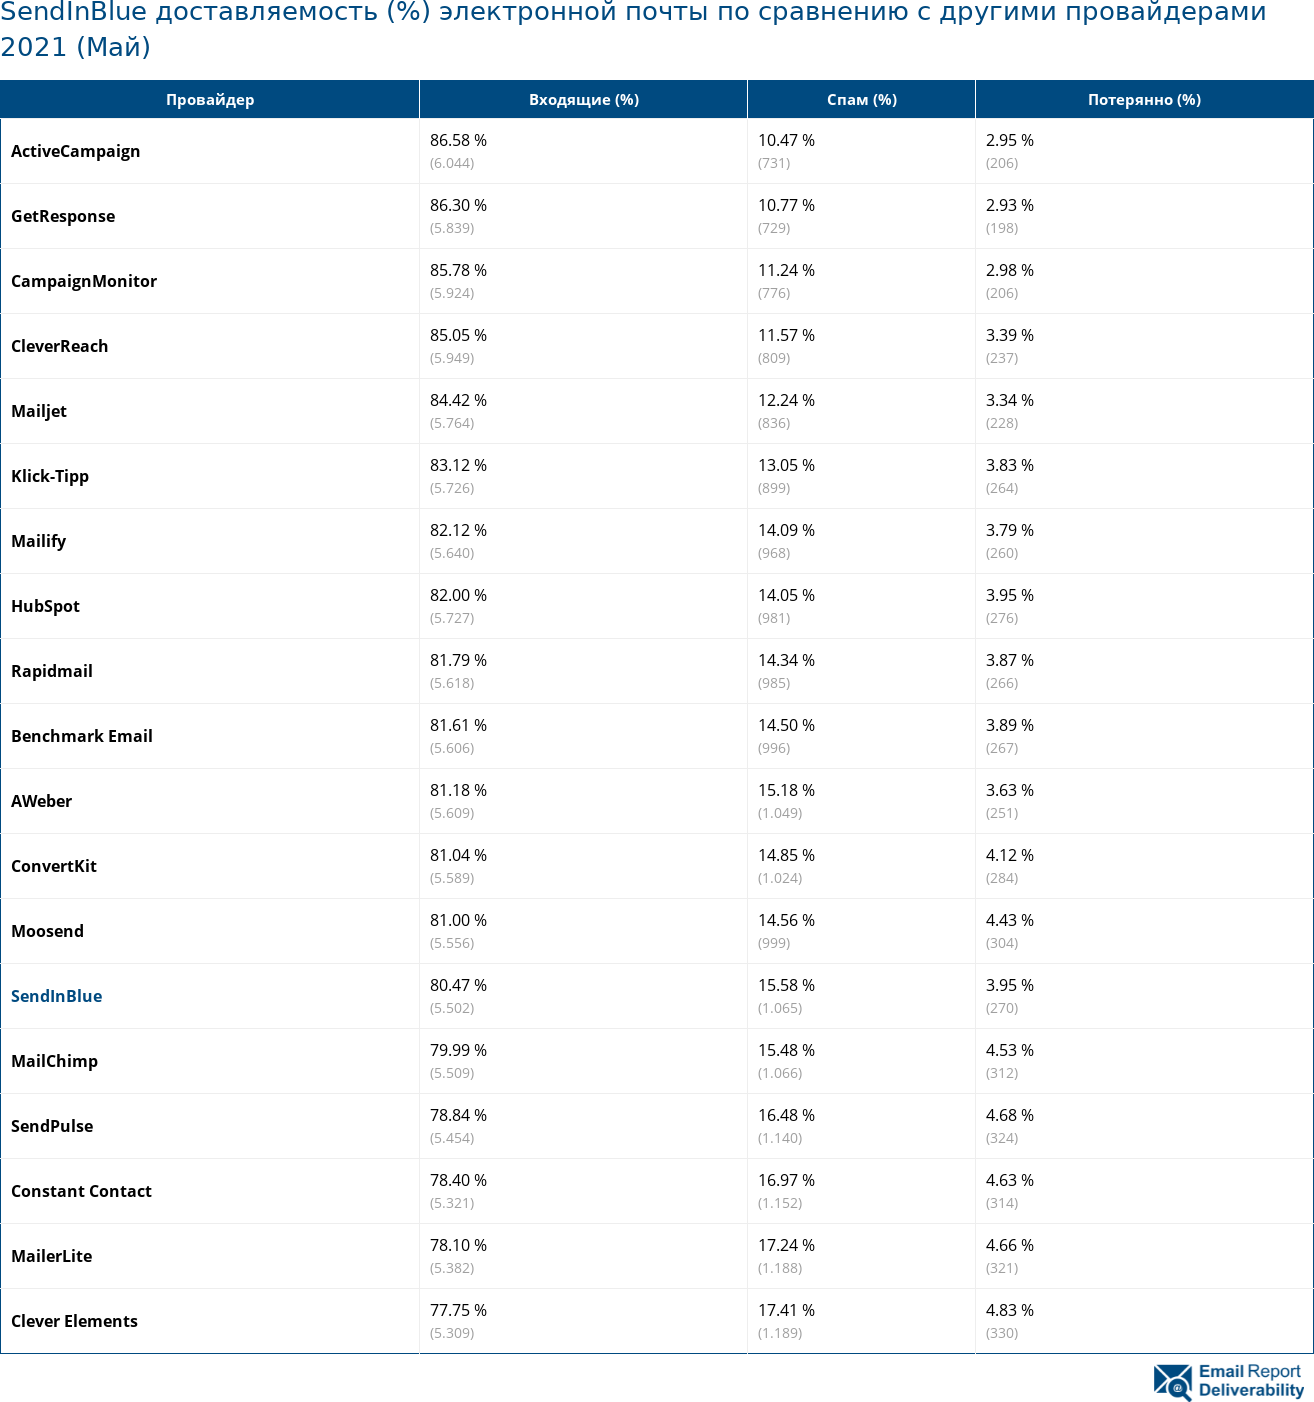 SendInBlue доставляемость (%) электронной почты по сравнению с другими провайдерами 2021 (Май)